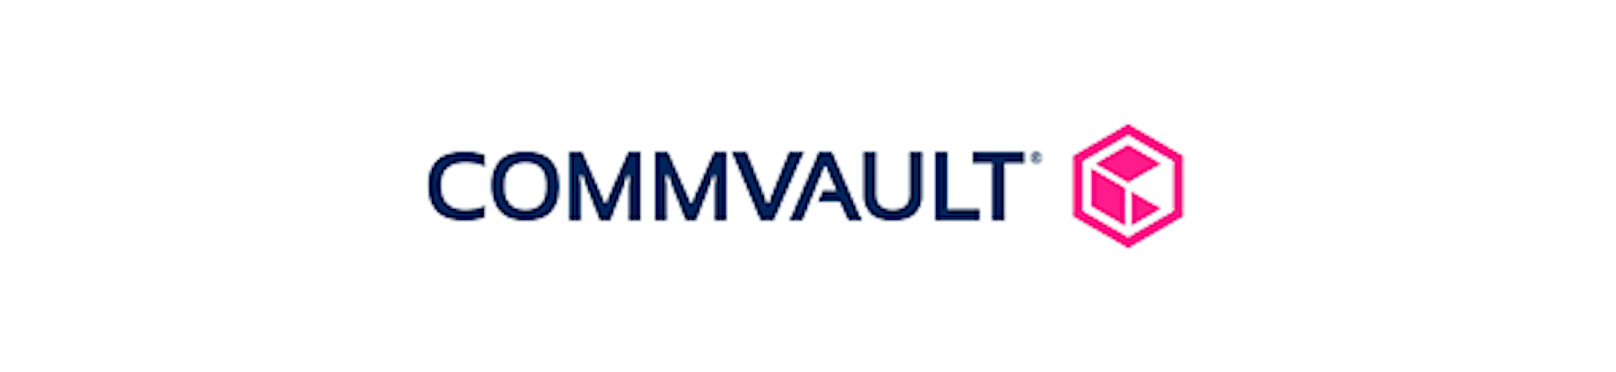 Commvault kündigt Partnerprogramme für Managed Service Provider und Aggregatoren an.